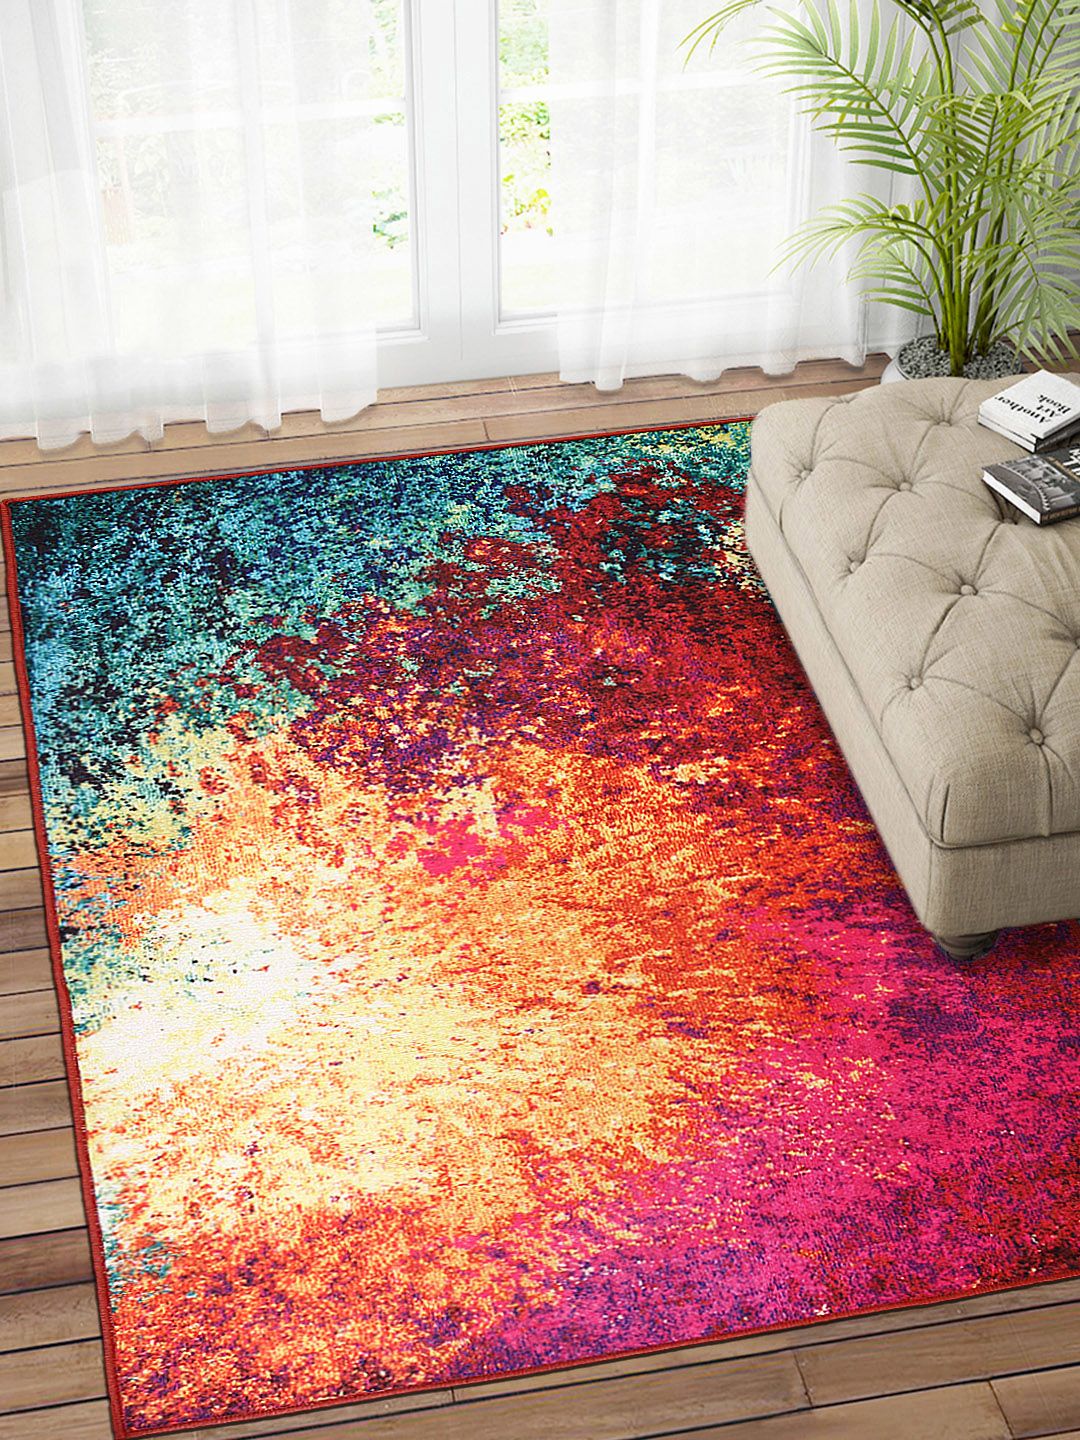 Status Multicoloured Printed Polyester Anti-Skid Carpet Price in India